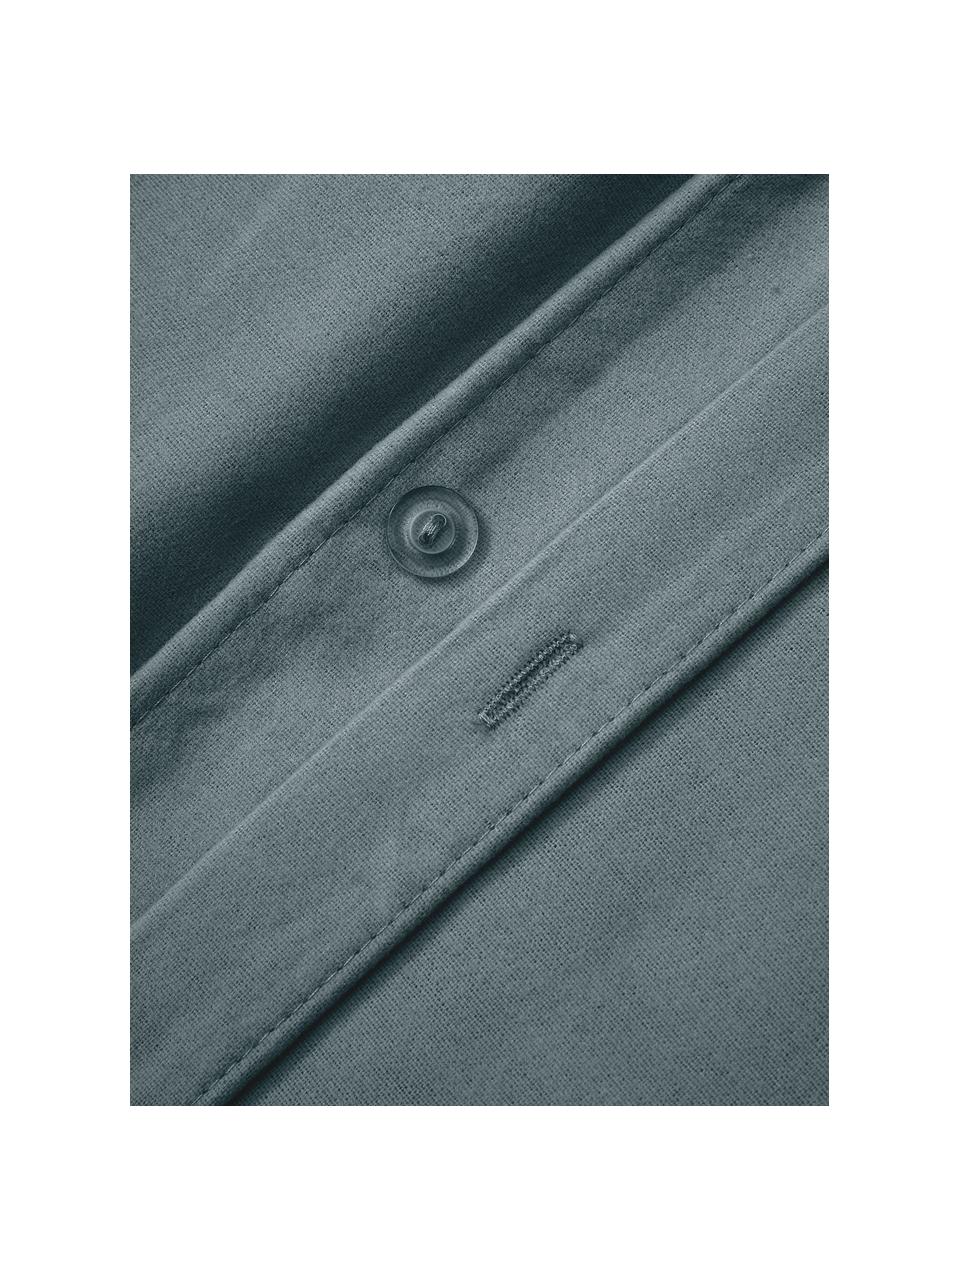 Flanellen dekbedovertrek Biba van katoen in grijsgroen, Weeftechniek: flanel Flanel is een knuf, Grijsgroen, B 200 x L 200 cm